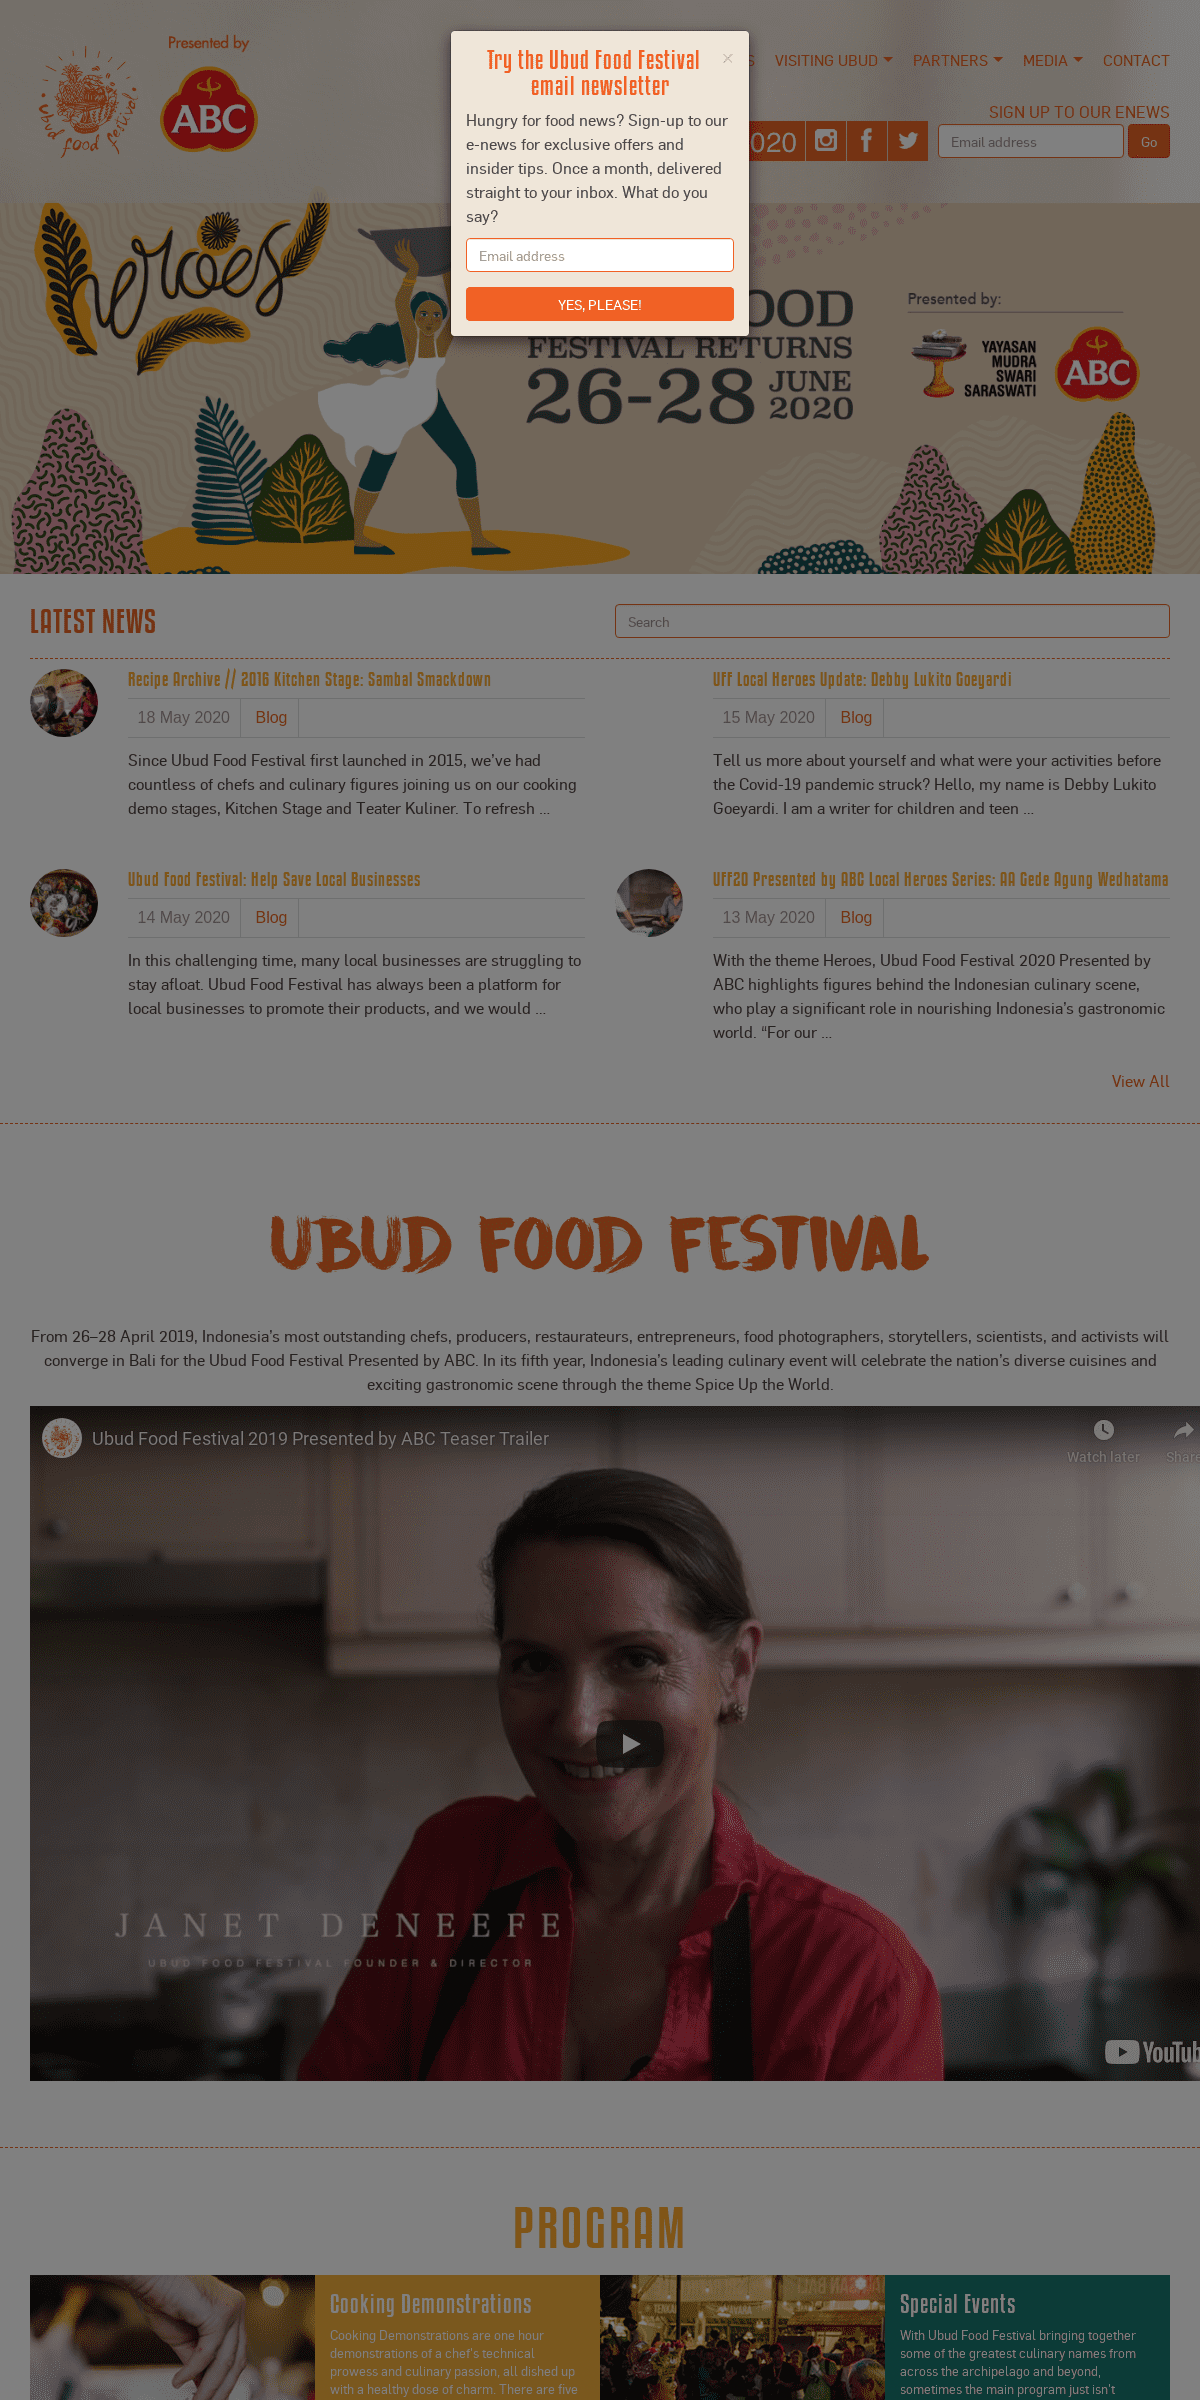 A complete backup of ubudfoodfestival.com